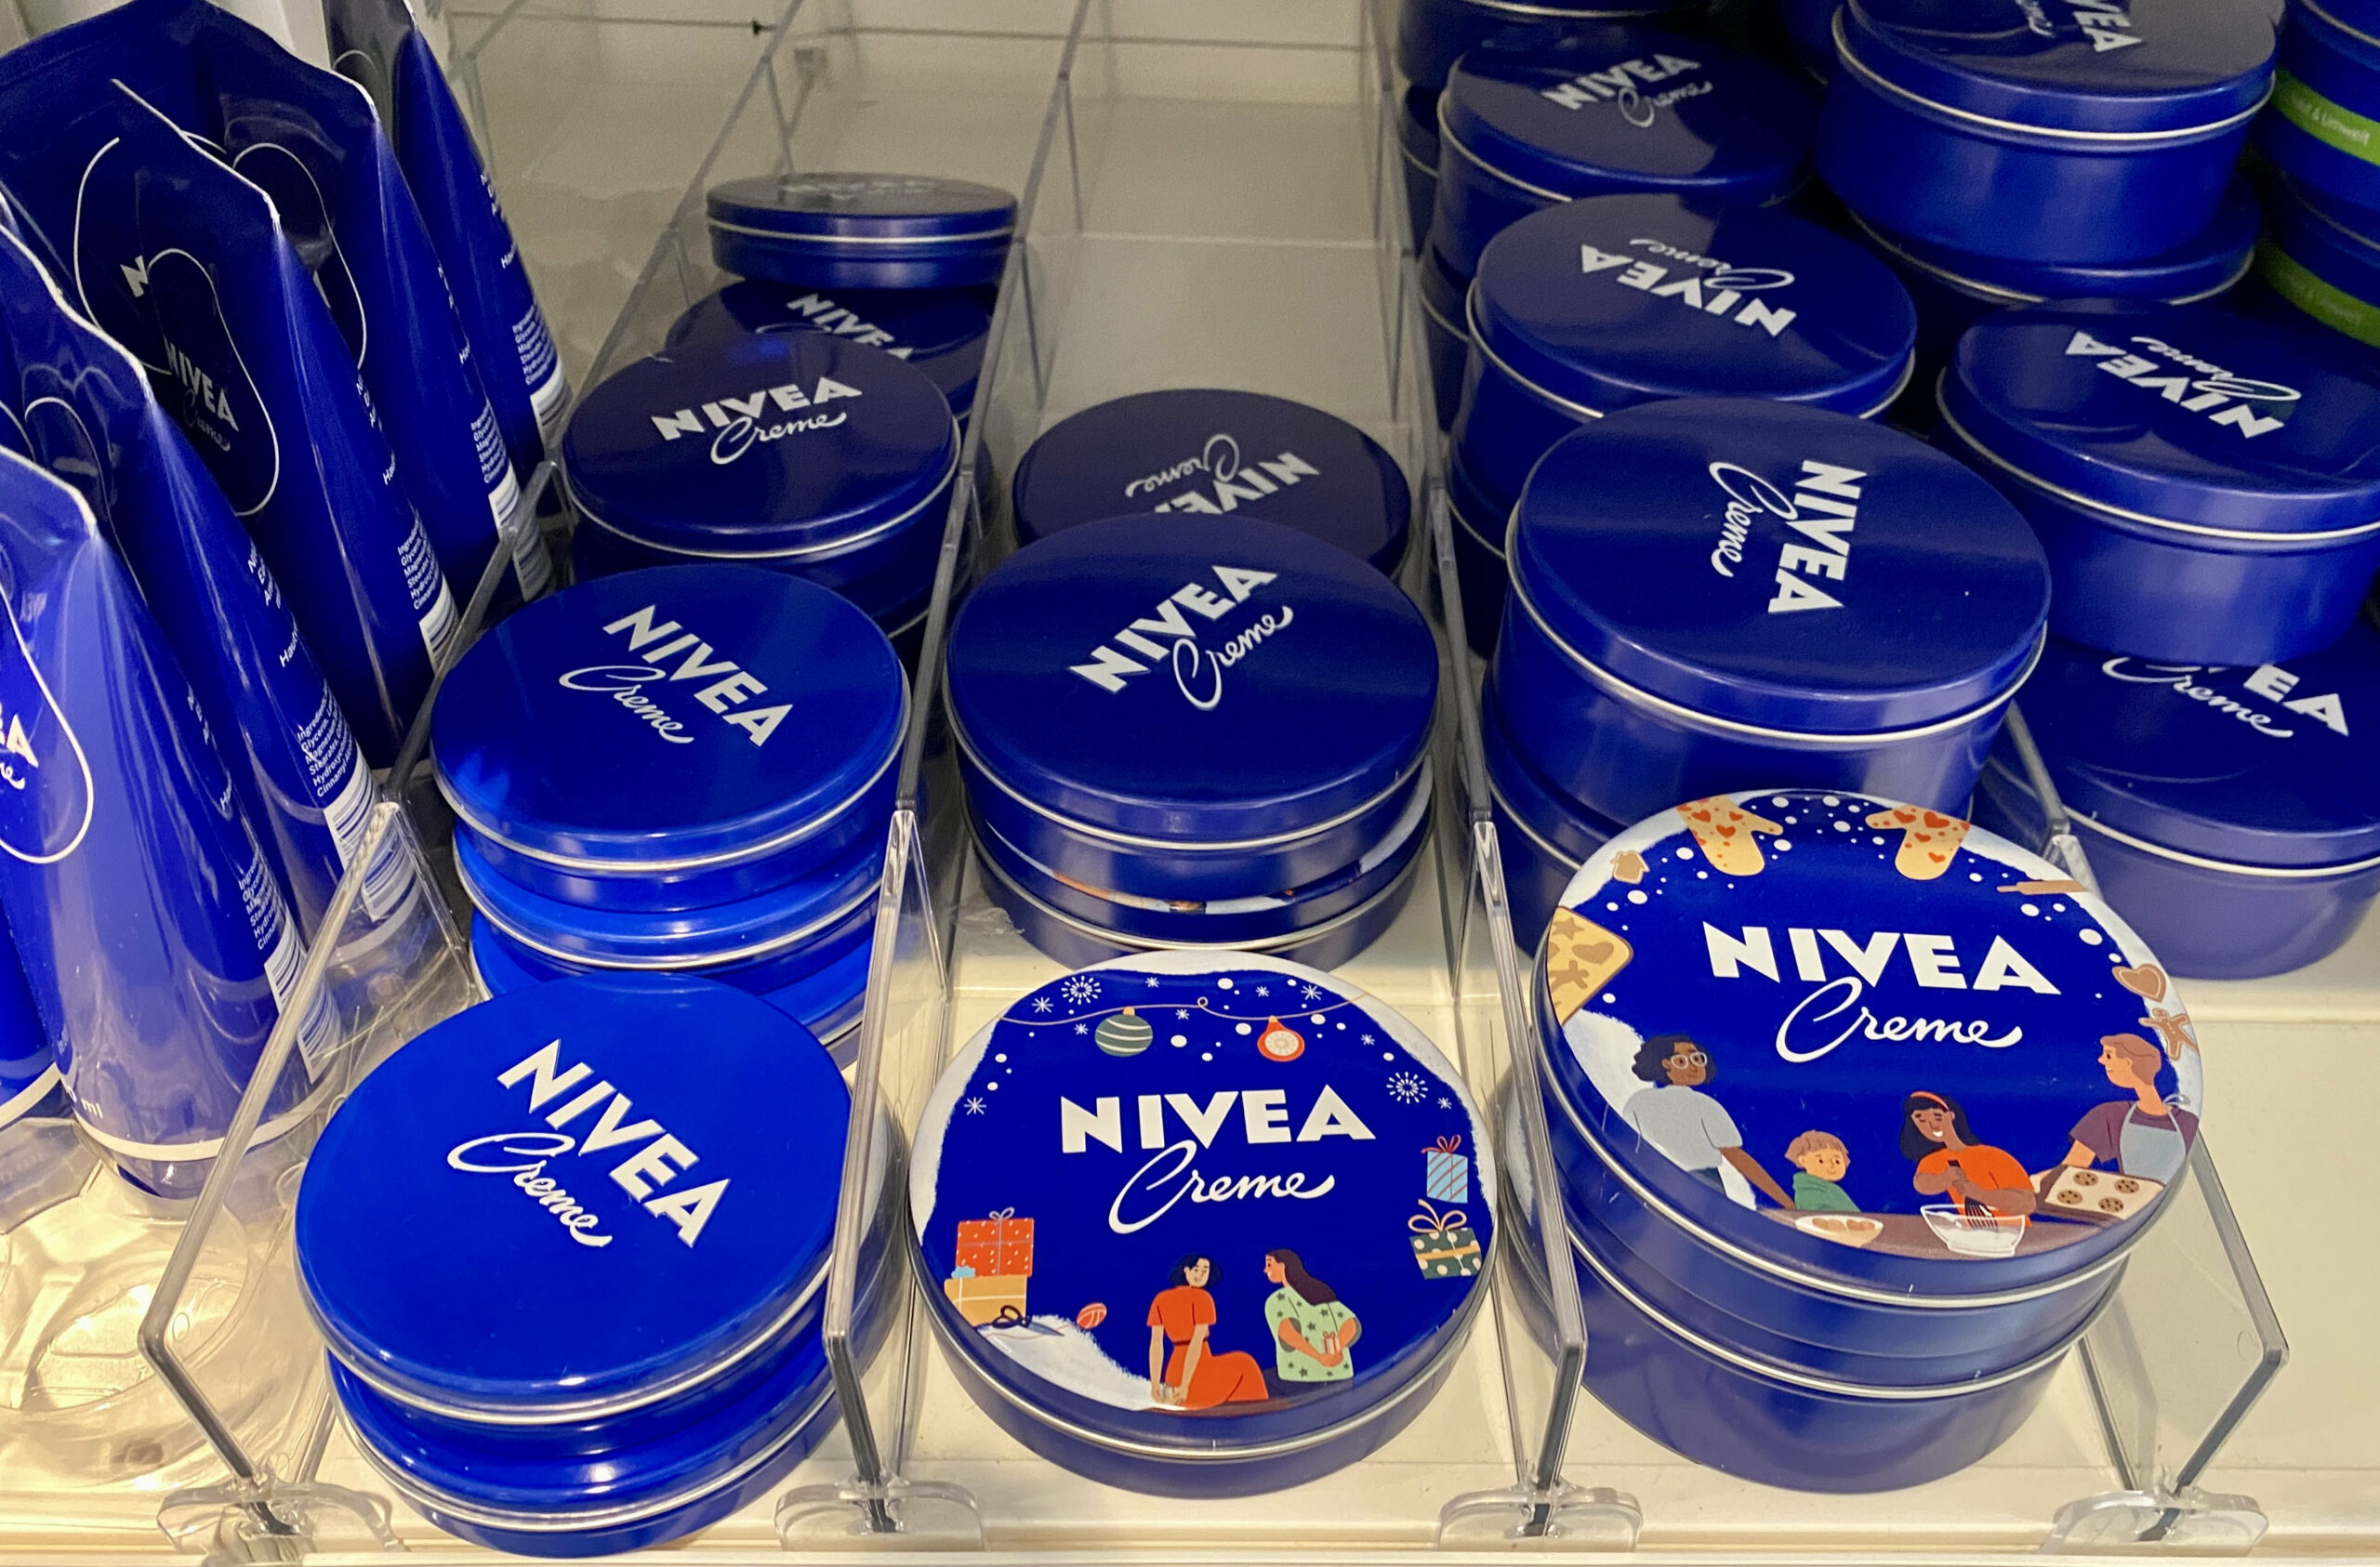 Nivea Creme-Dosen in einem Drogeriemarkt